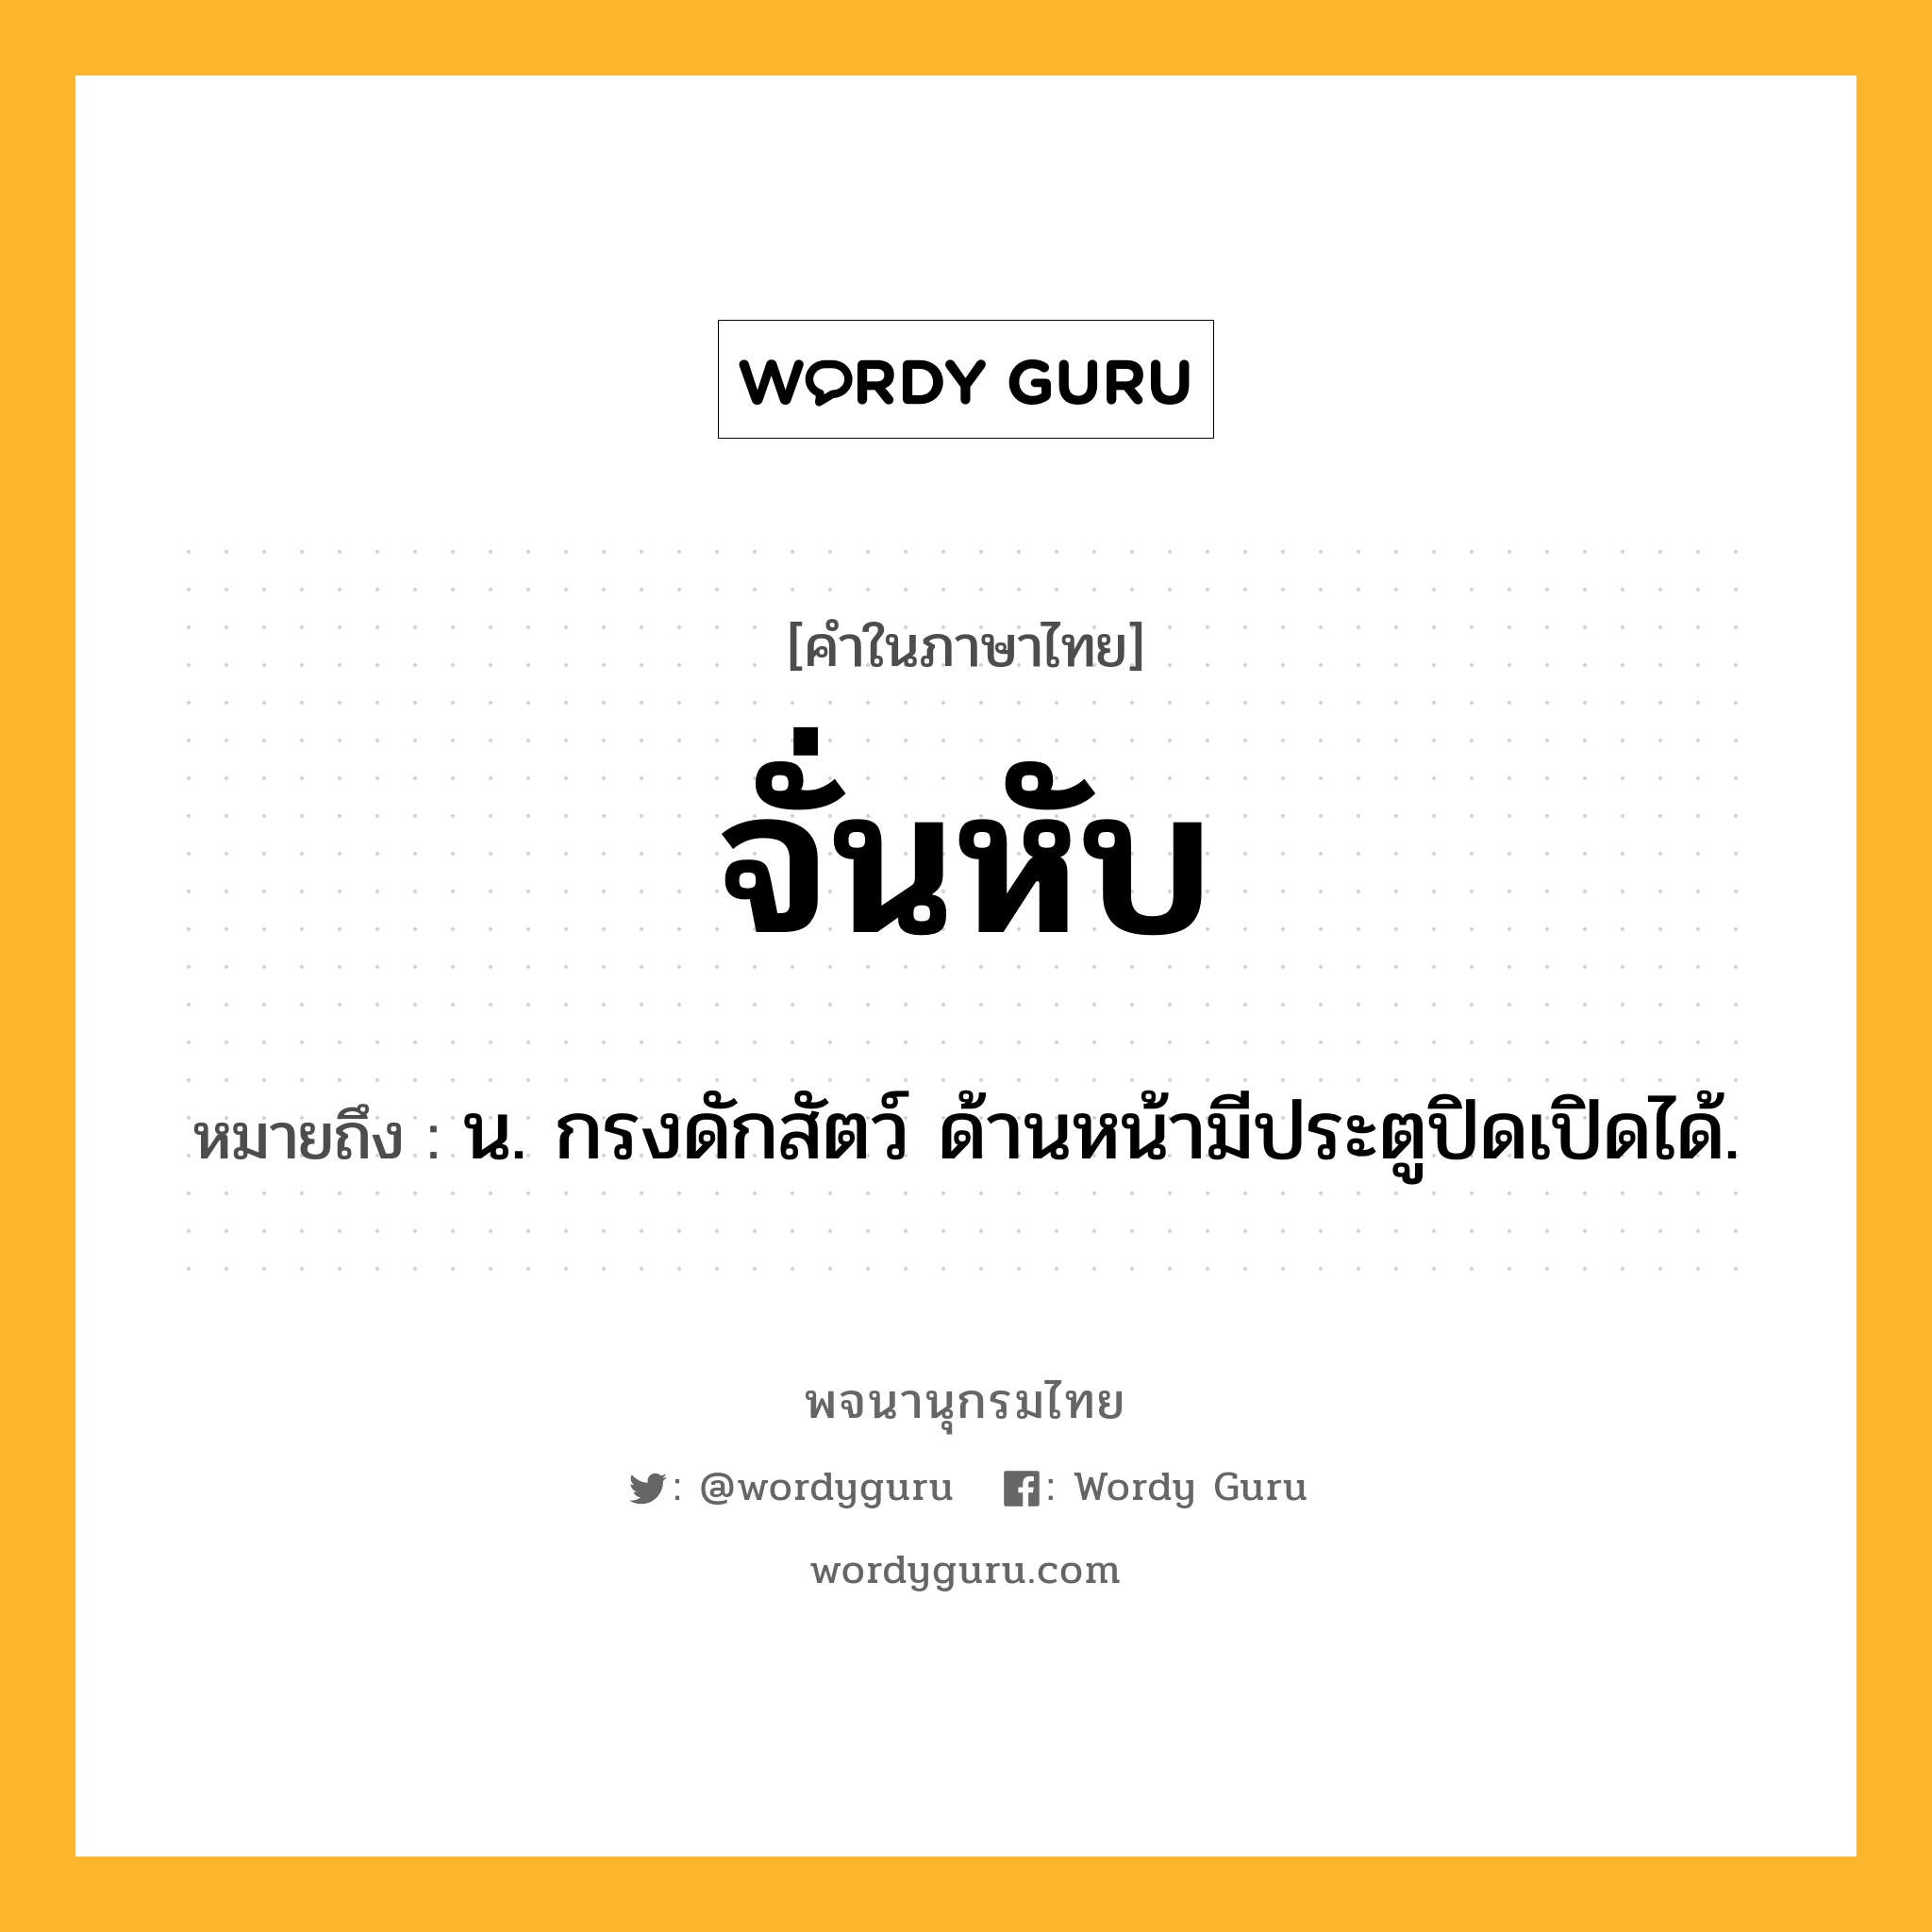 จั่นหับ ความหมาย หมายถึงอะไร?, คำในภาษาไทย จั่นหับ หมายถึง น. กรงดักสัตว์ ด้านหน้ามีประตูปิดเปิดได้.